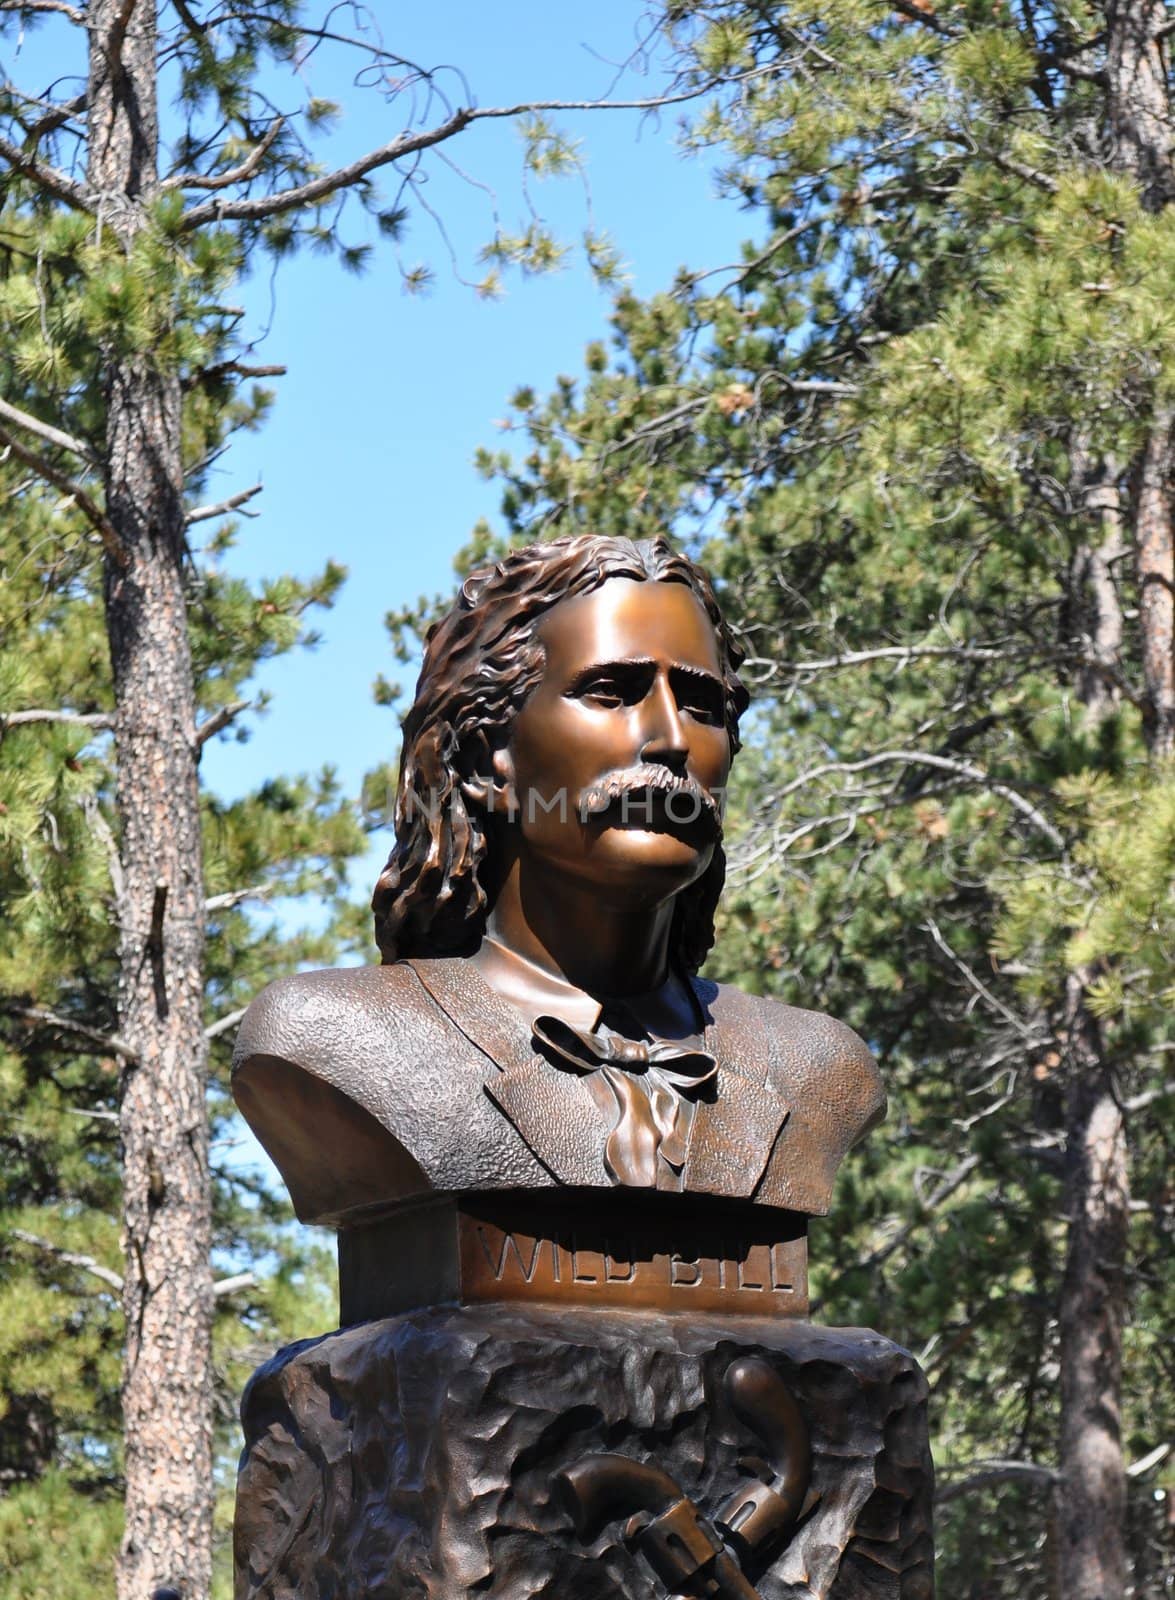 Deadwood wild bill statue